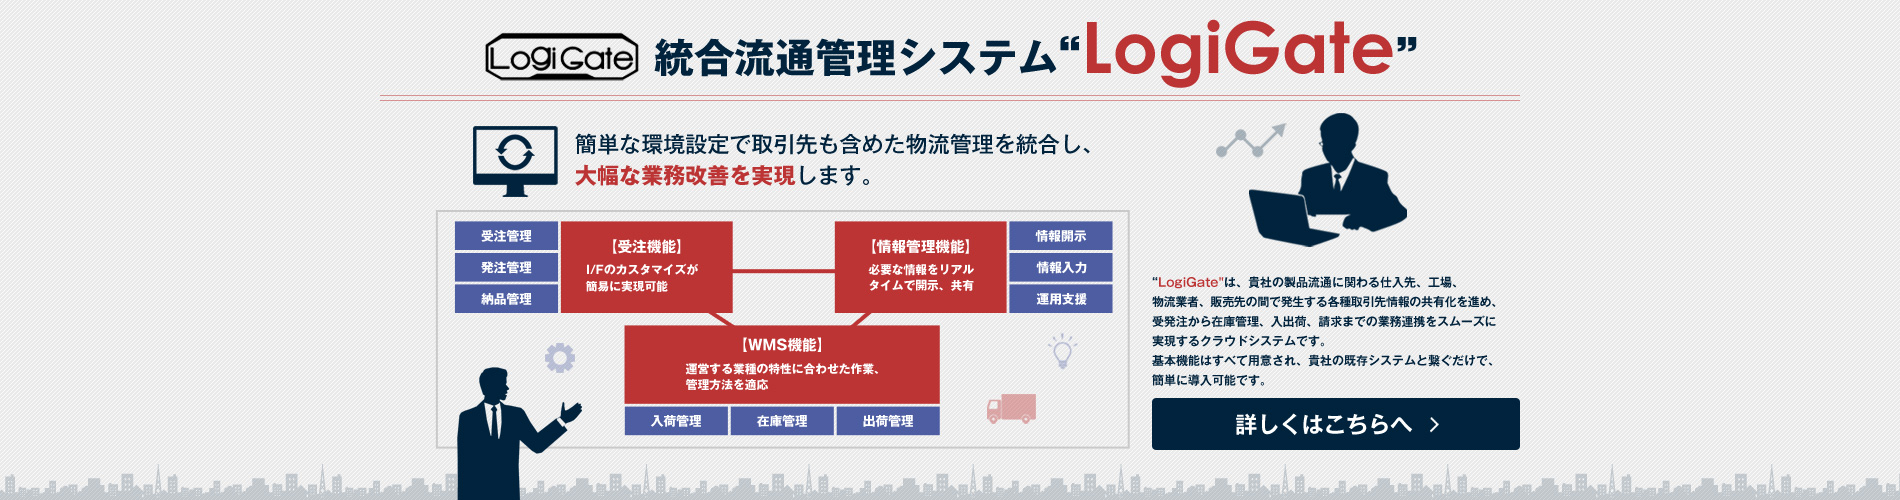 統合流通管理システム”Logigate"